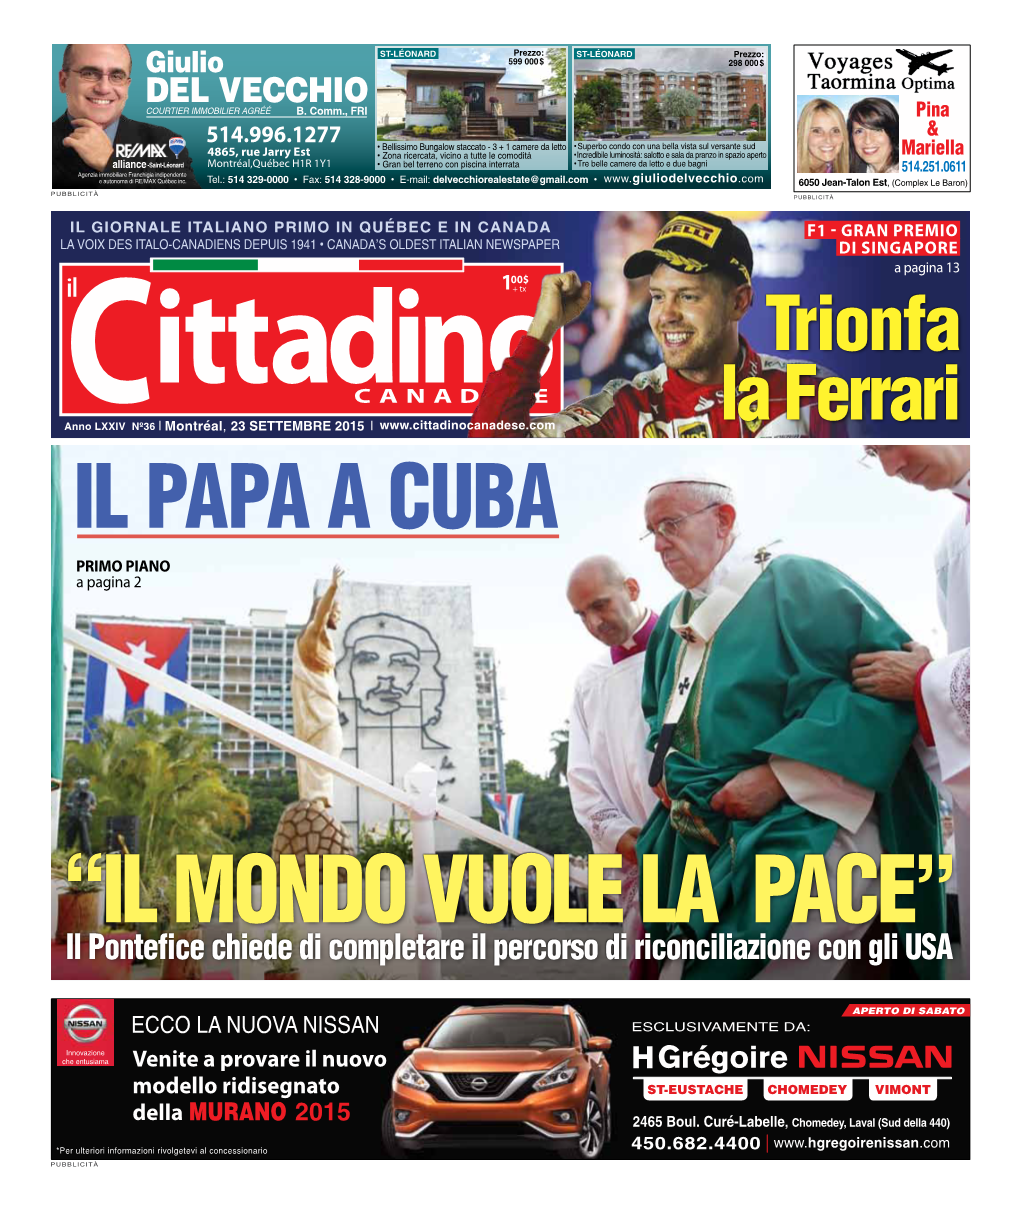 23 Settembre 2015 | La Ferrari Il Papa a Cuba PRIMO PIANO a Pagina 2